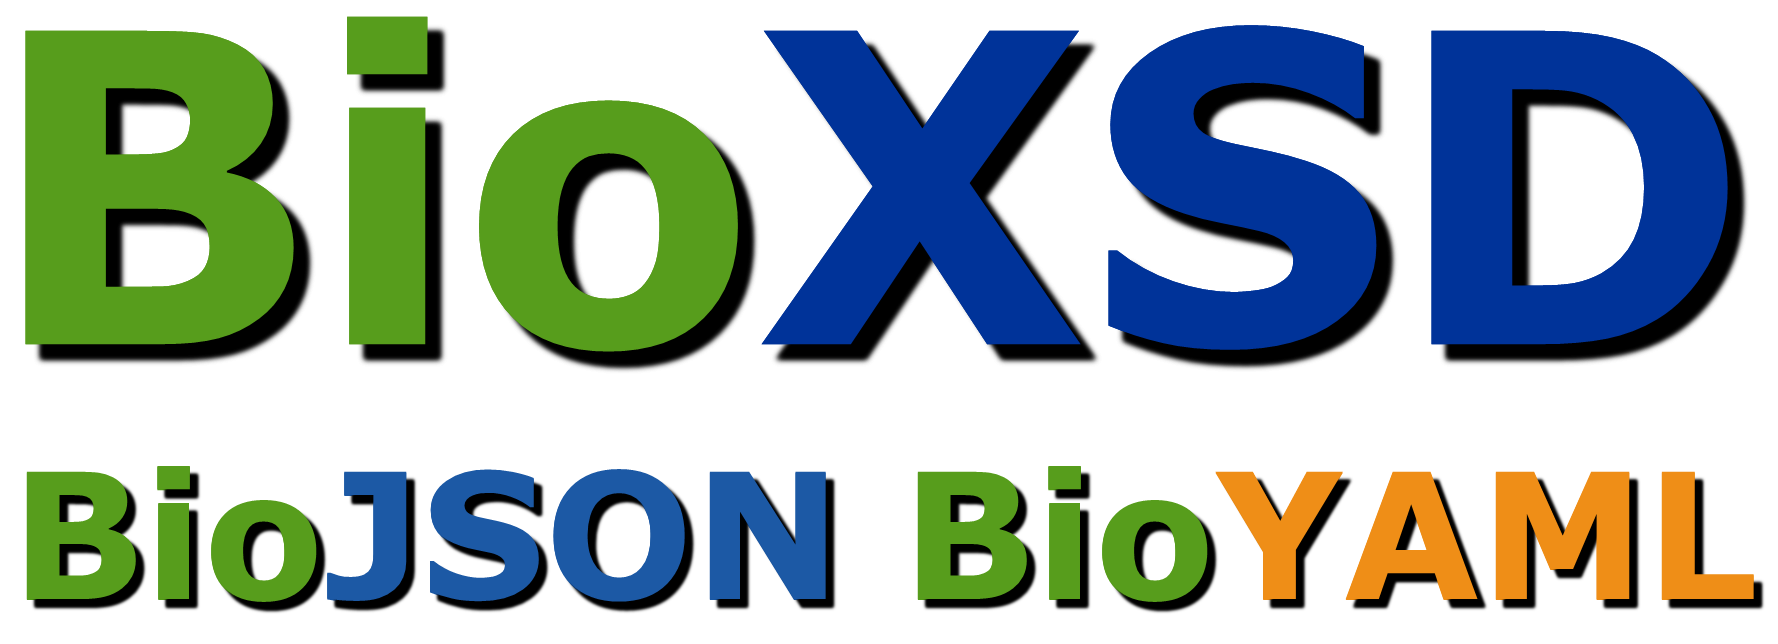 BioXSD | BioJSON | BioYAML